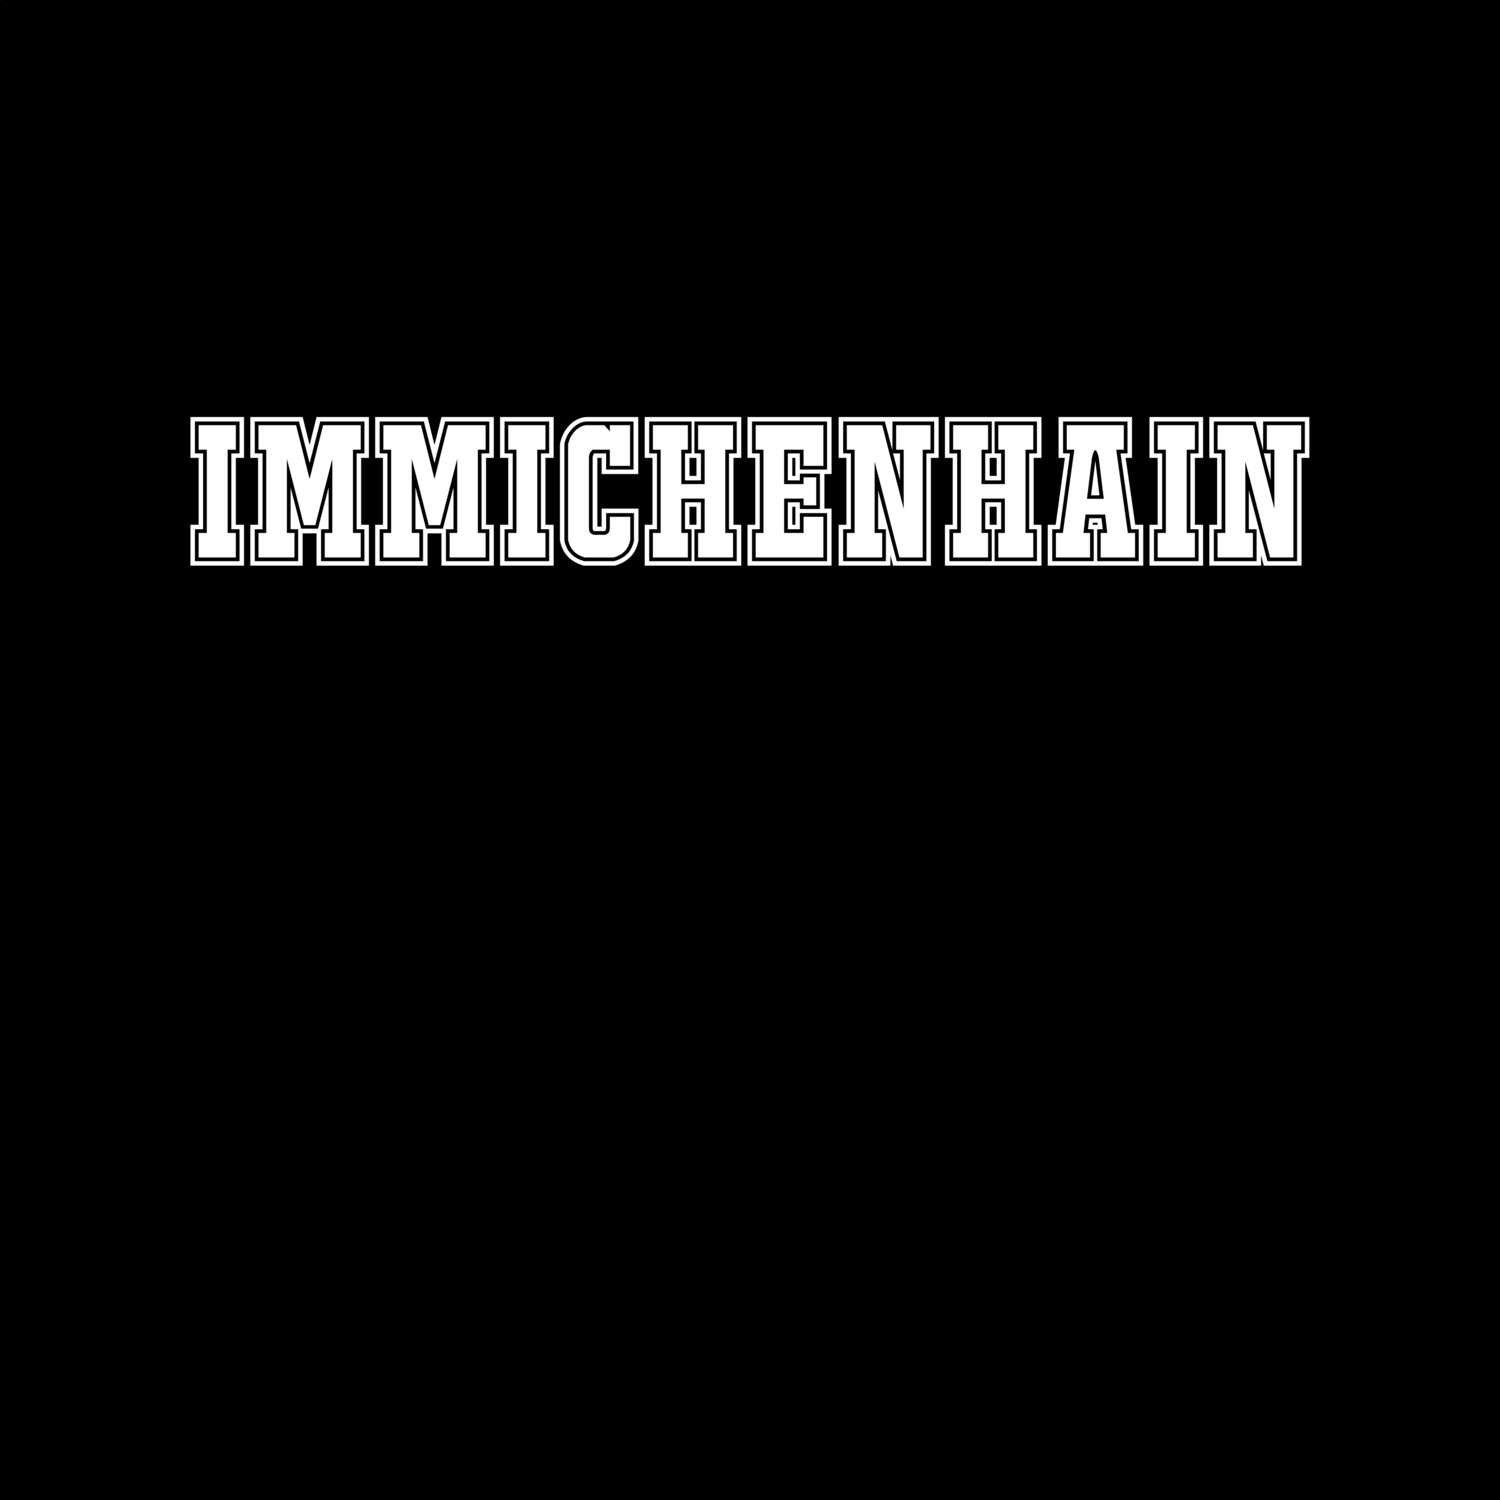 Immichenhain T-Shirt »Classic«